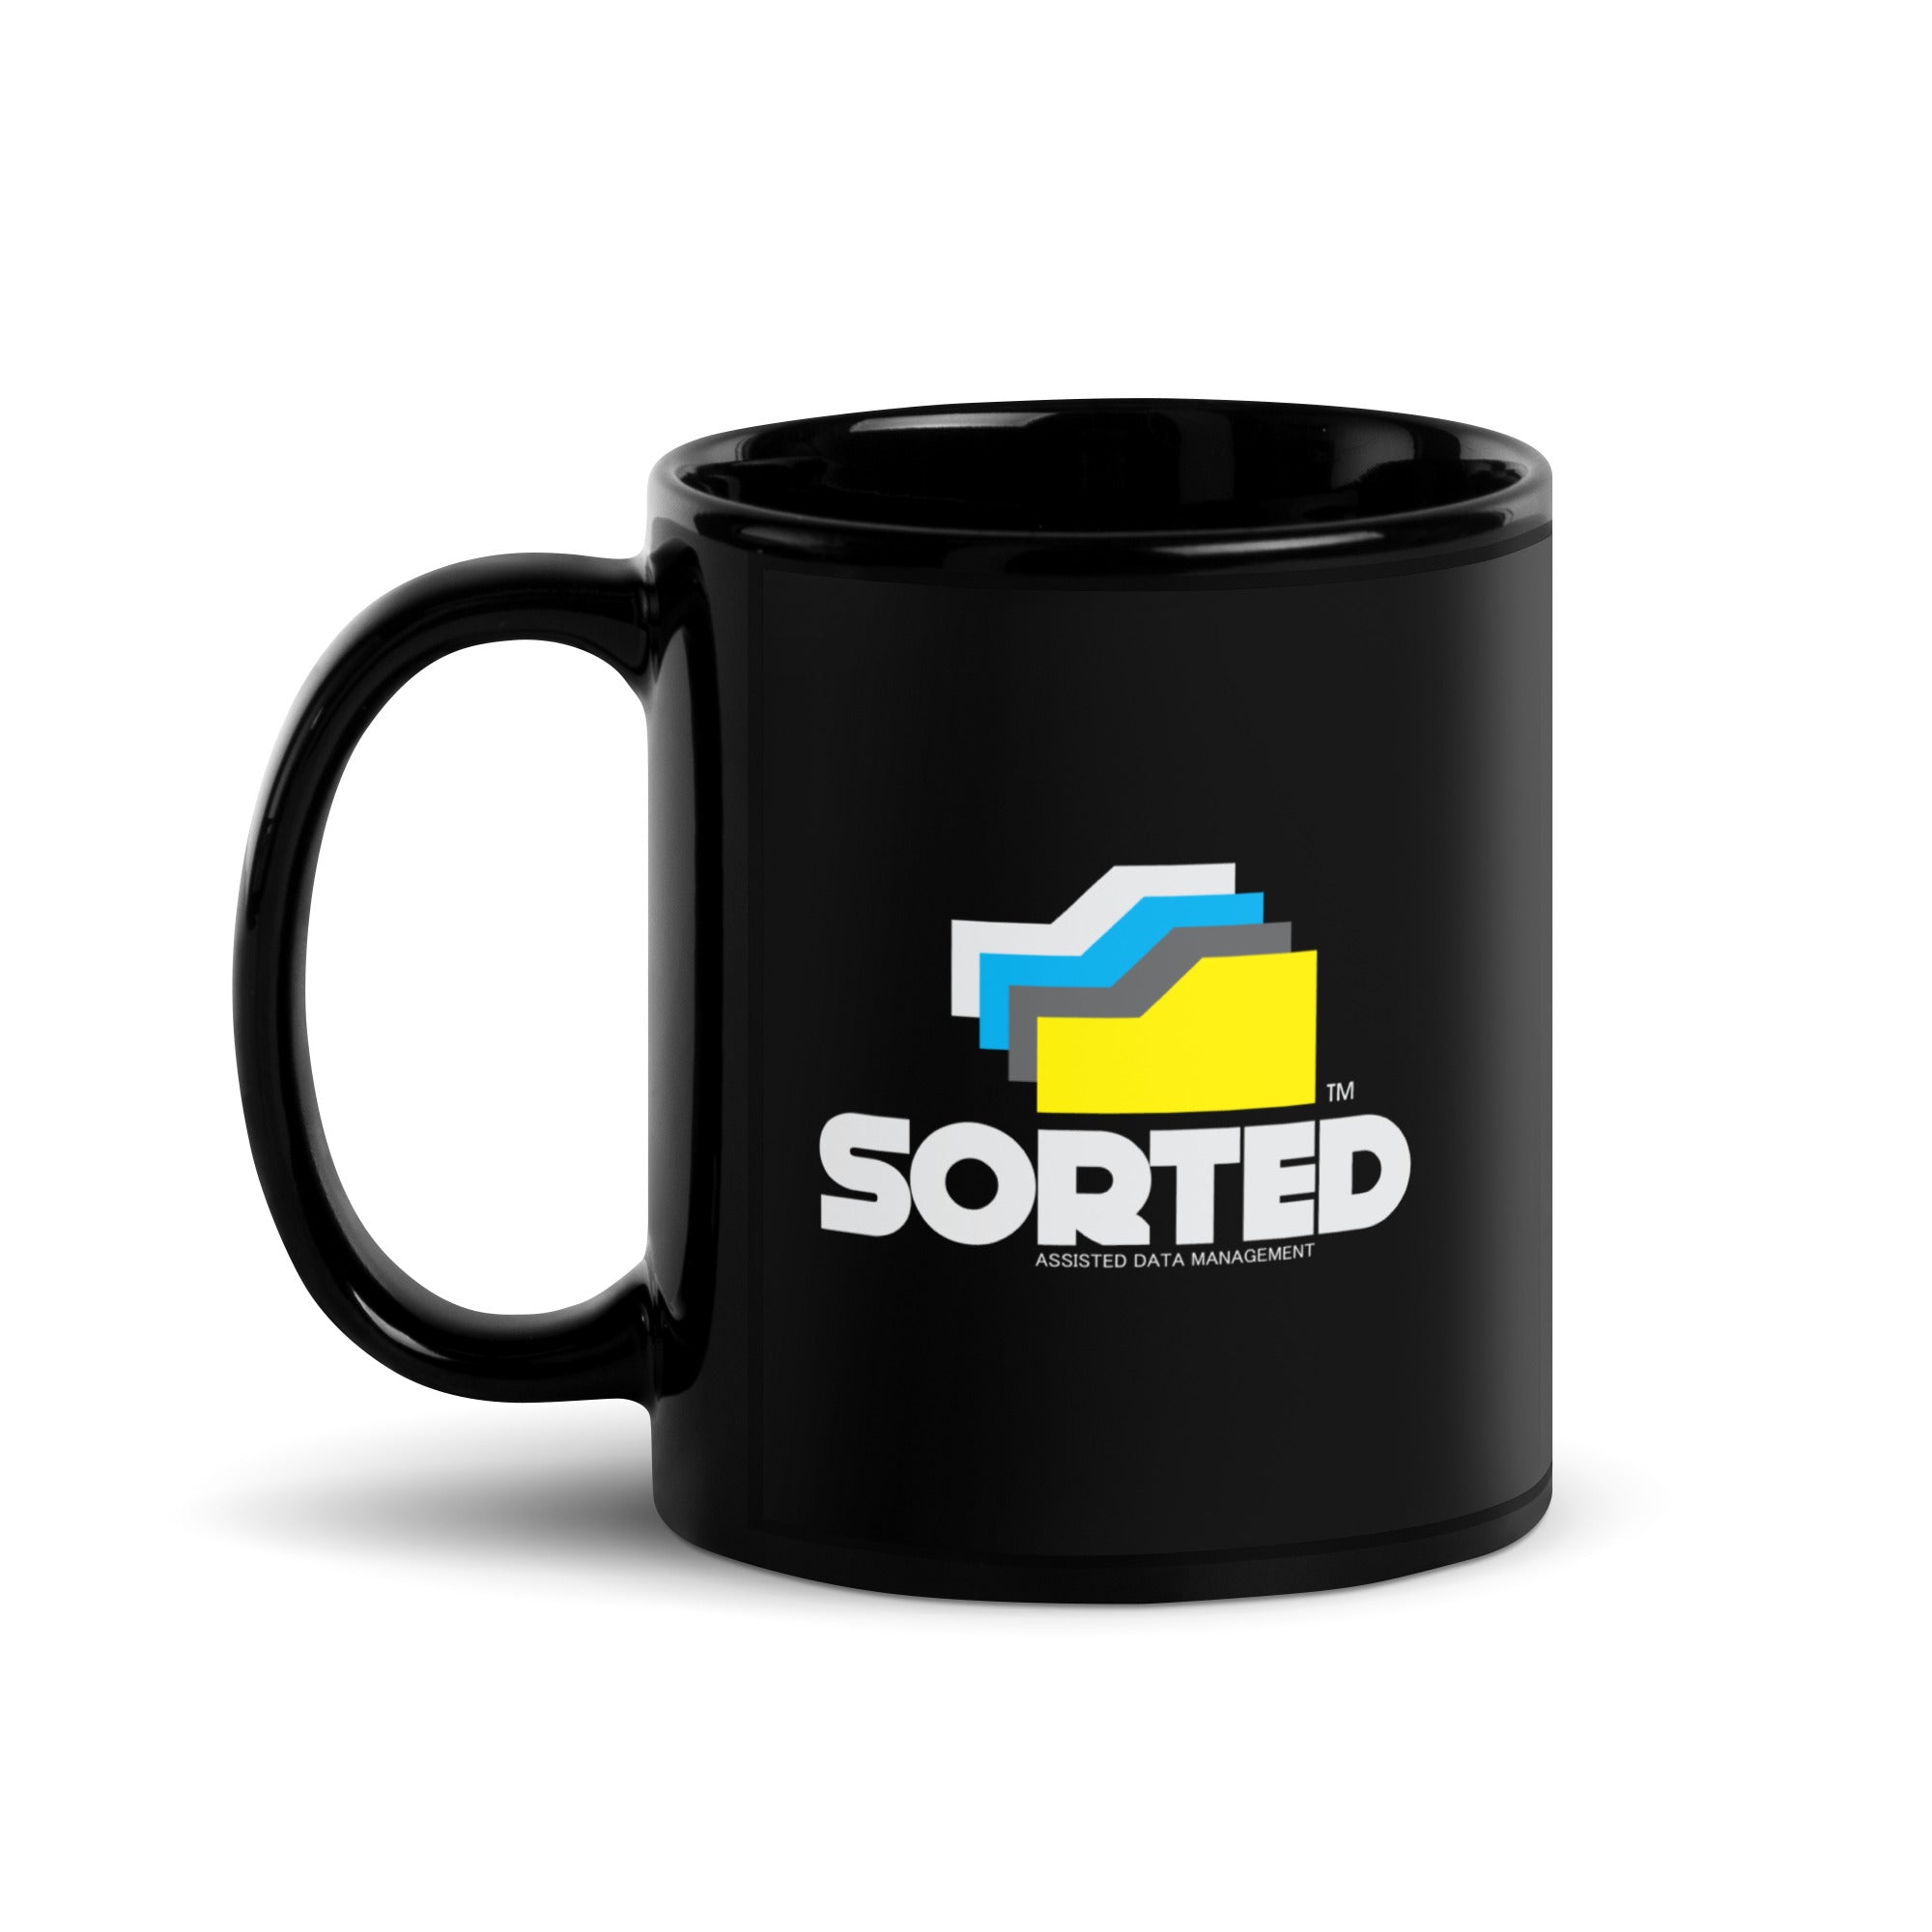 SORTED Mug